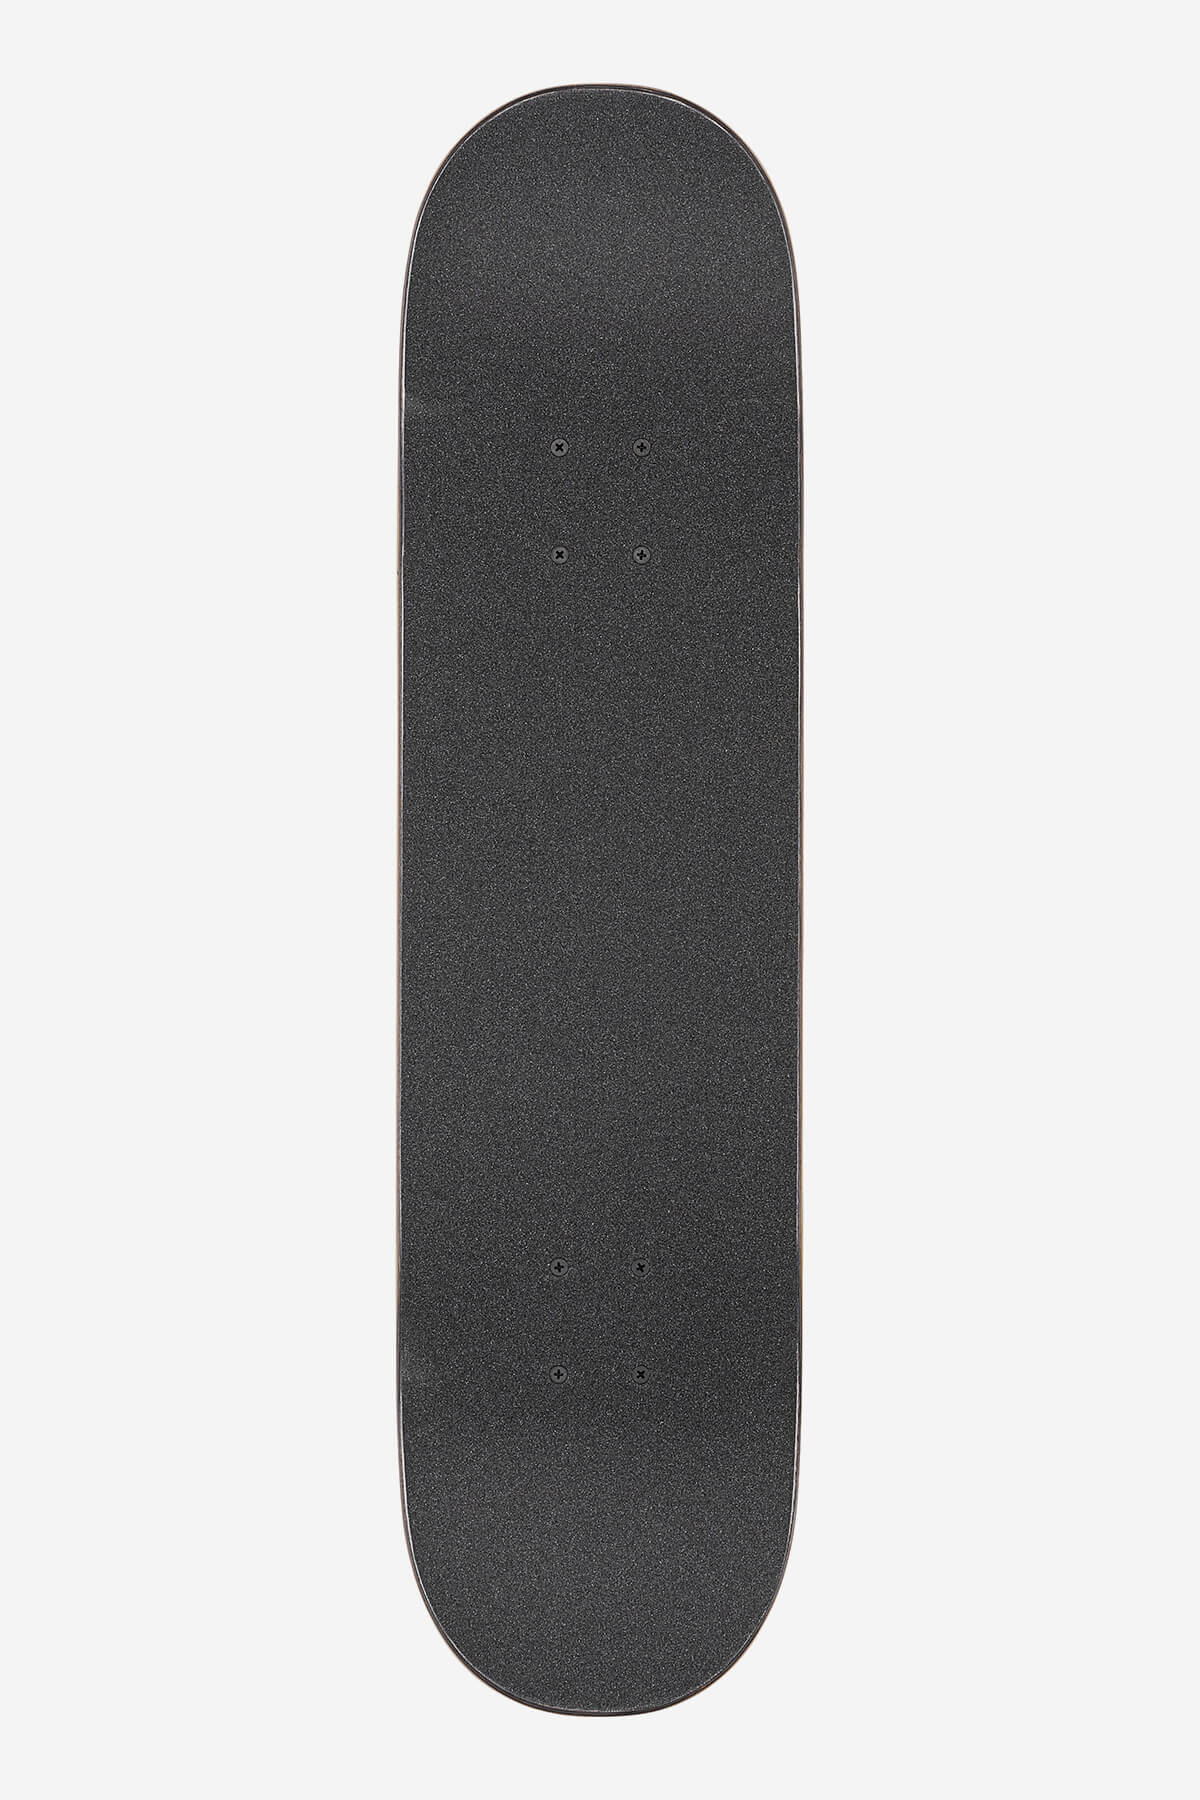 Globe Skateboard completa G1 Natives 8.0" Completa Skateboard en Black/Copper